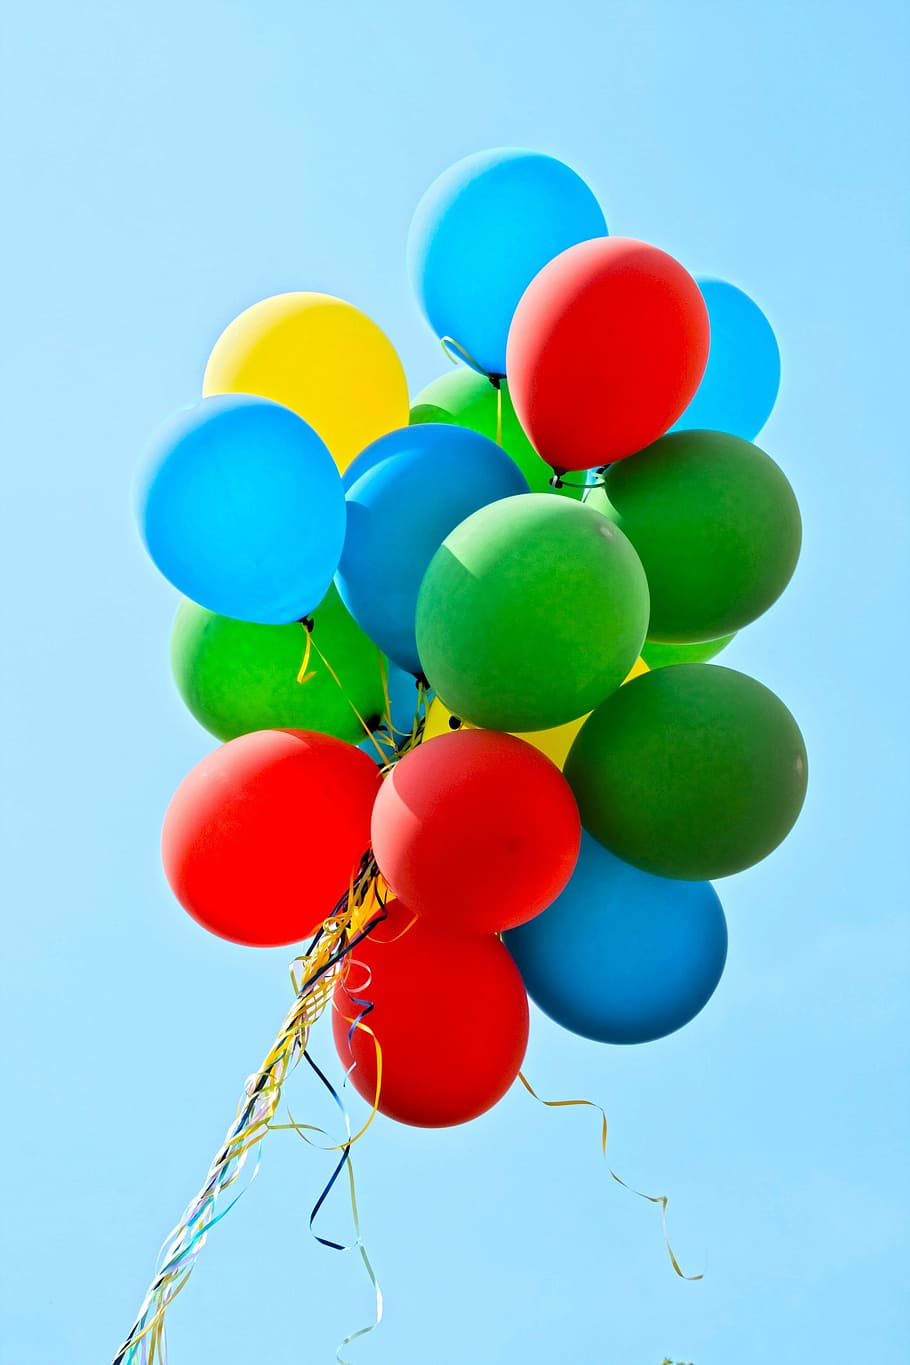 verde, azul, vermelho, amarelo, balões, festa, colorido, decoração, aniversário infantil, diversão